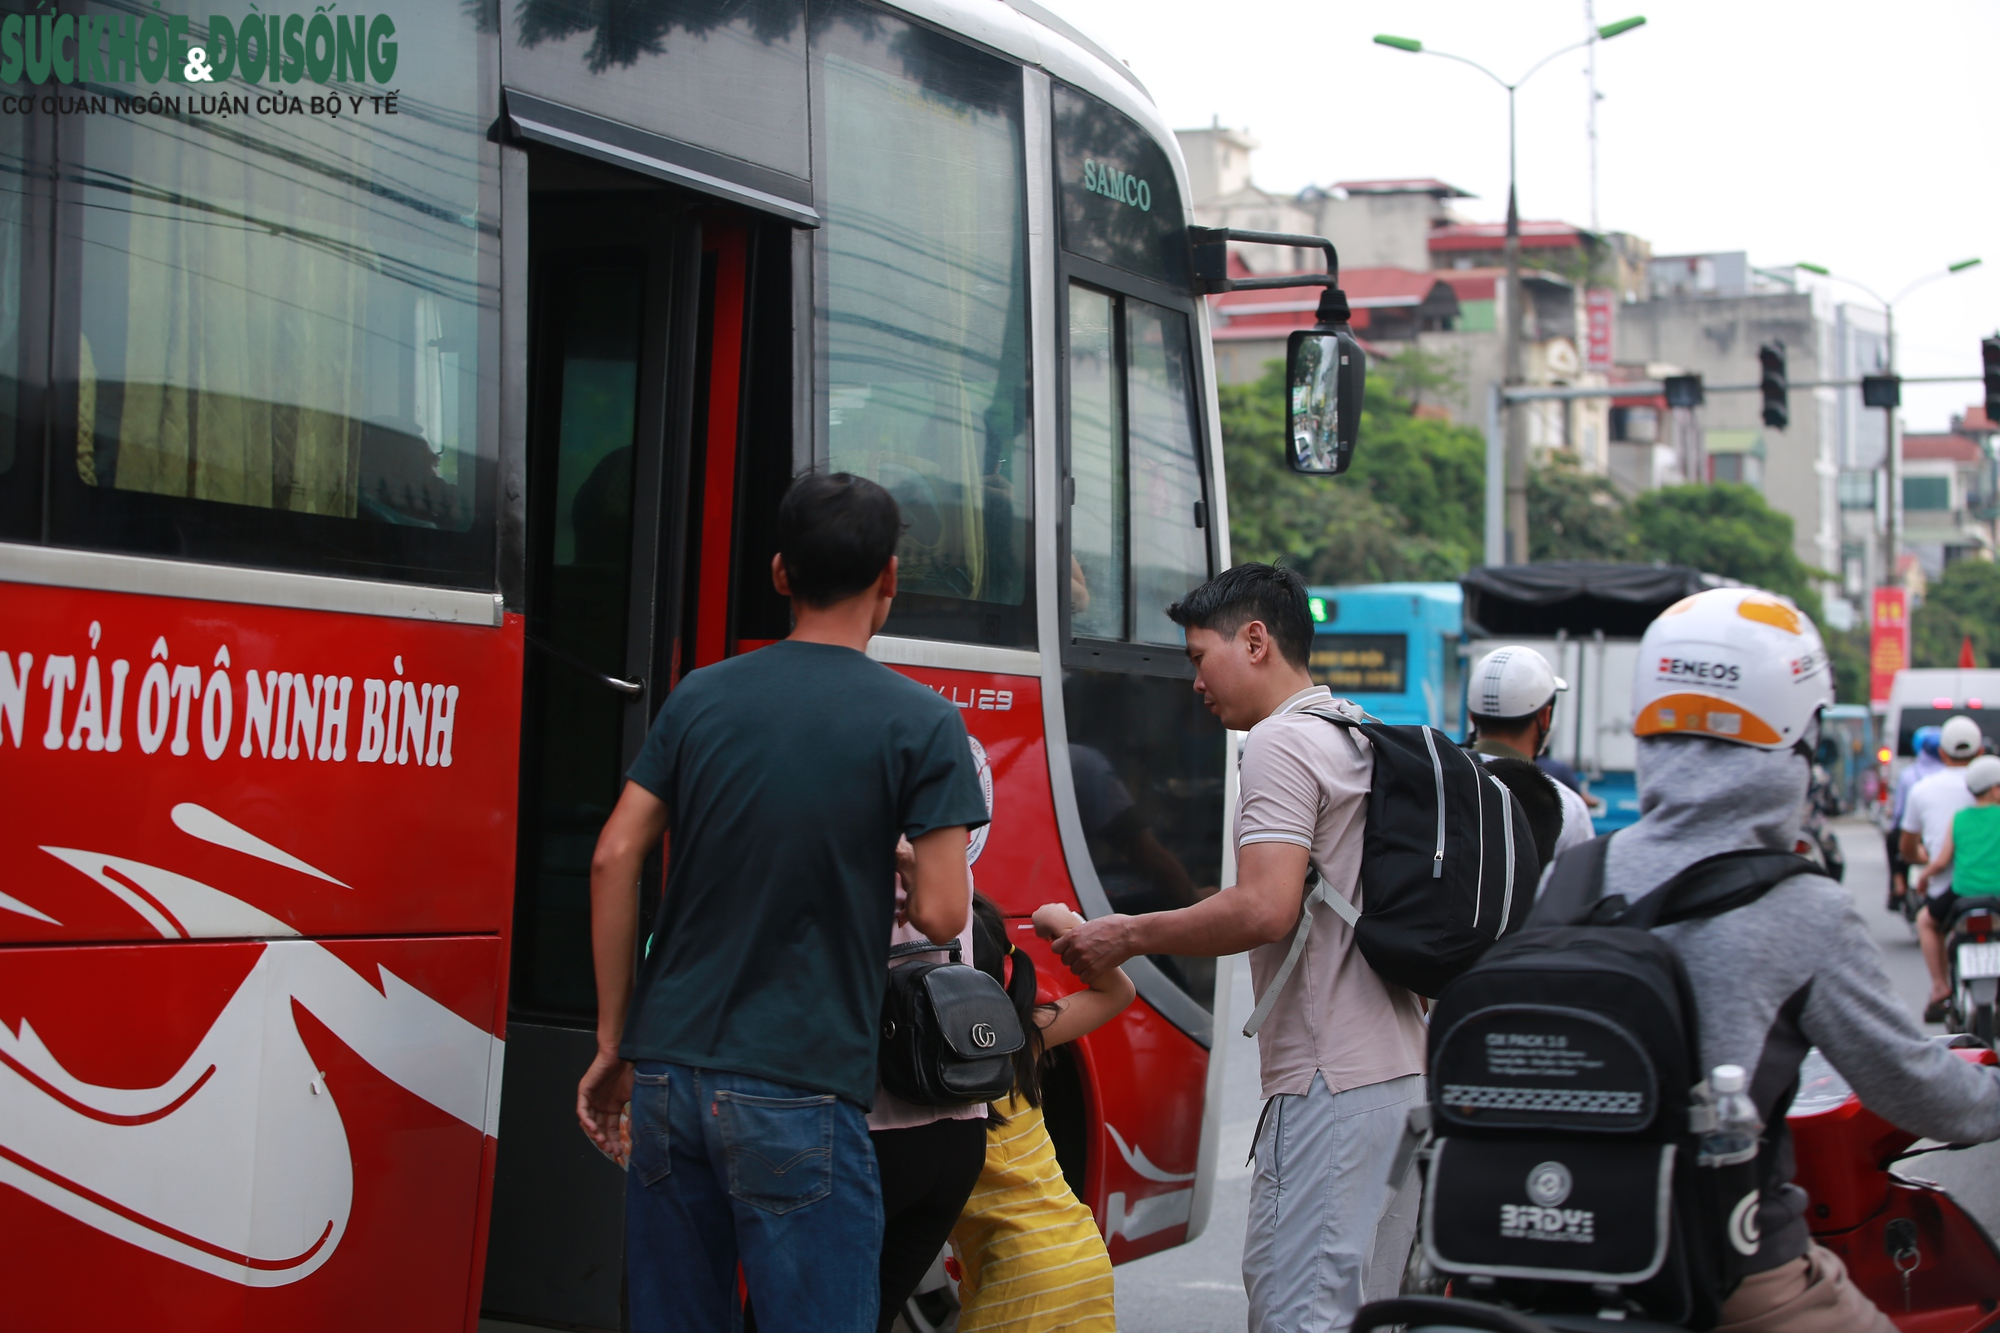 Hà Nội tăng cường hàng trăm phương tiện để đón lượng khách vượt 300% - Ảnh 3.